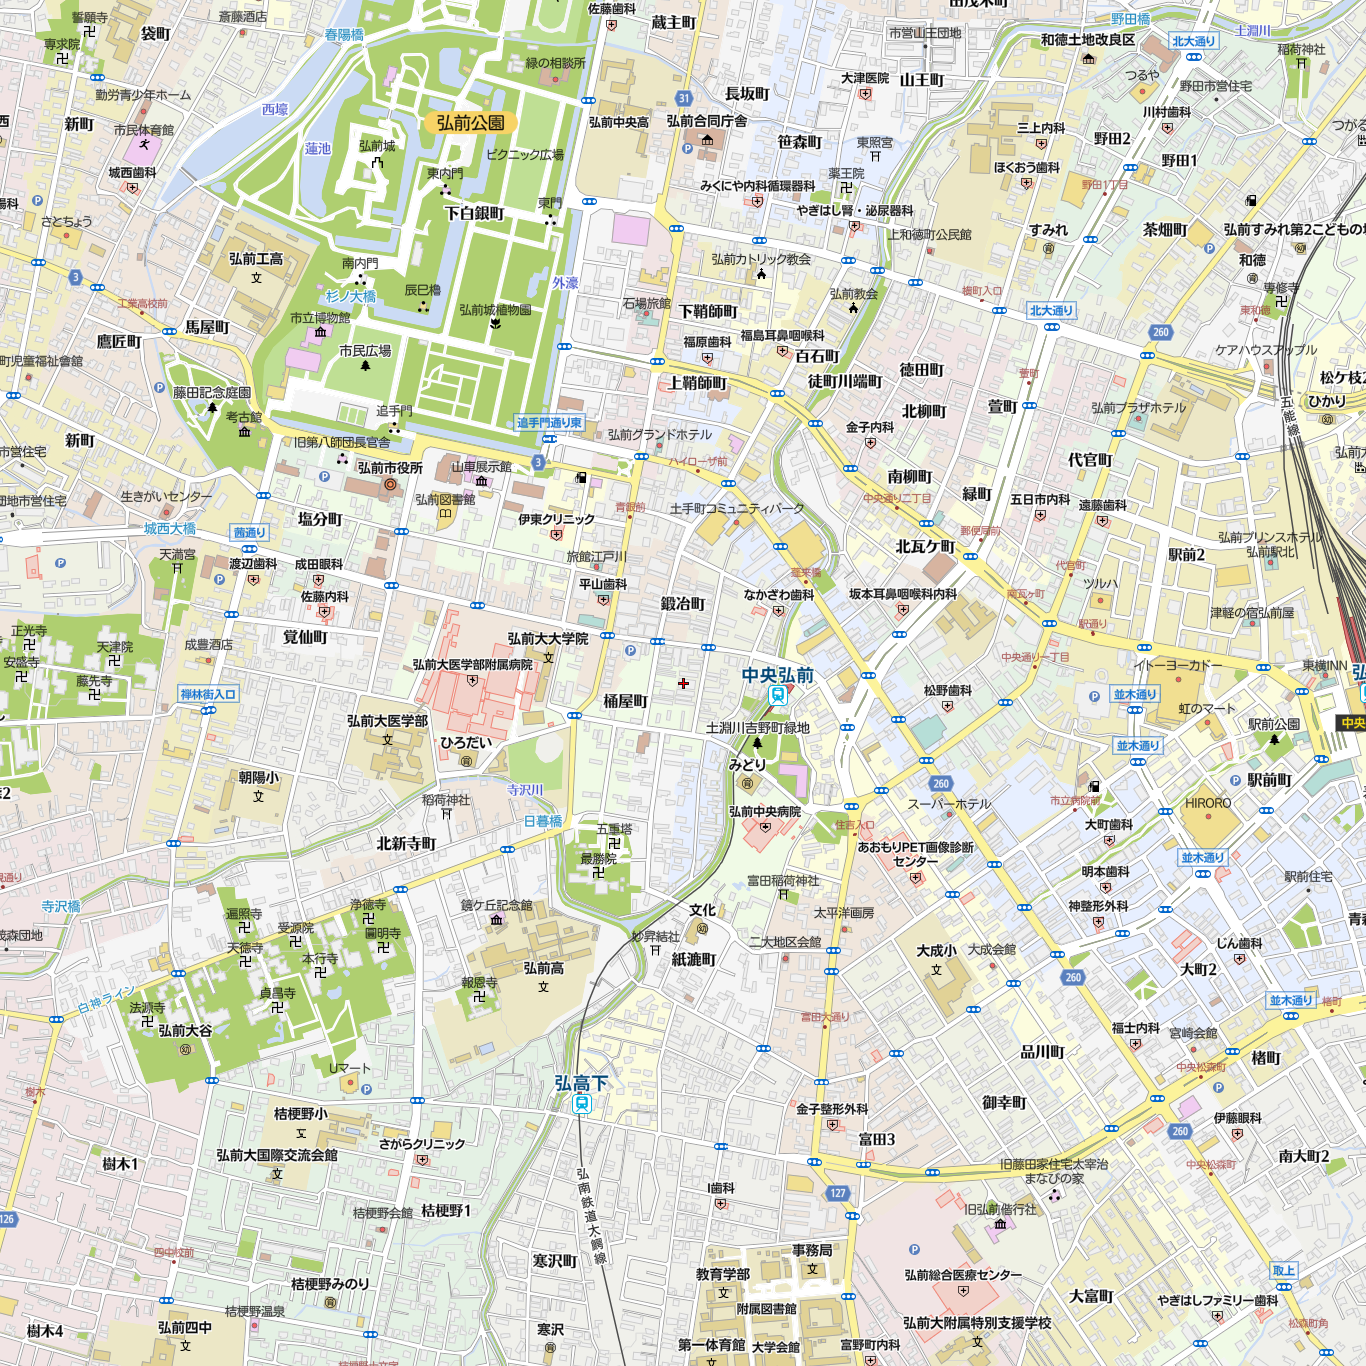 ととや 魚々家 弘前市 和食 の地図 地図マピオン